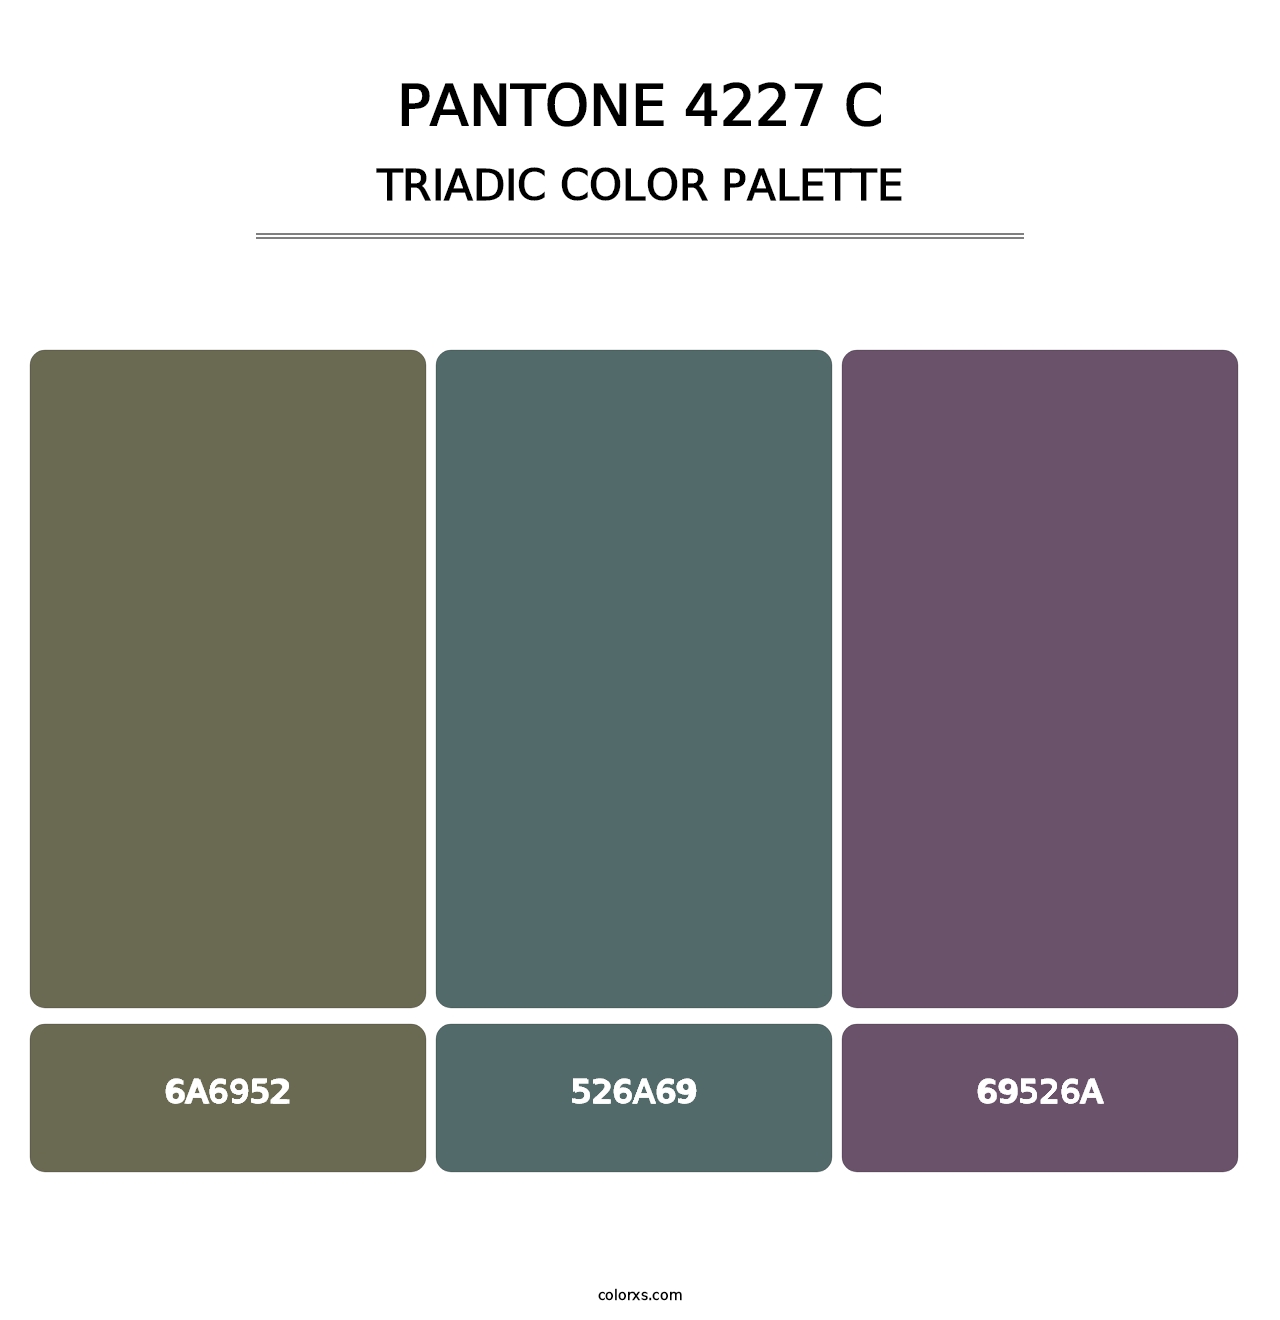 PANTONE 4227 C - Triadic Color Palette